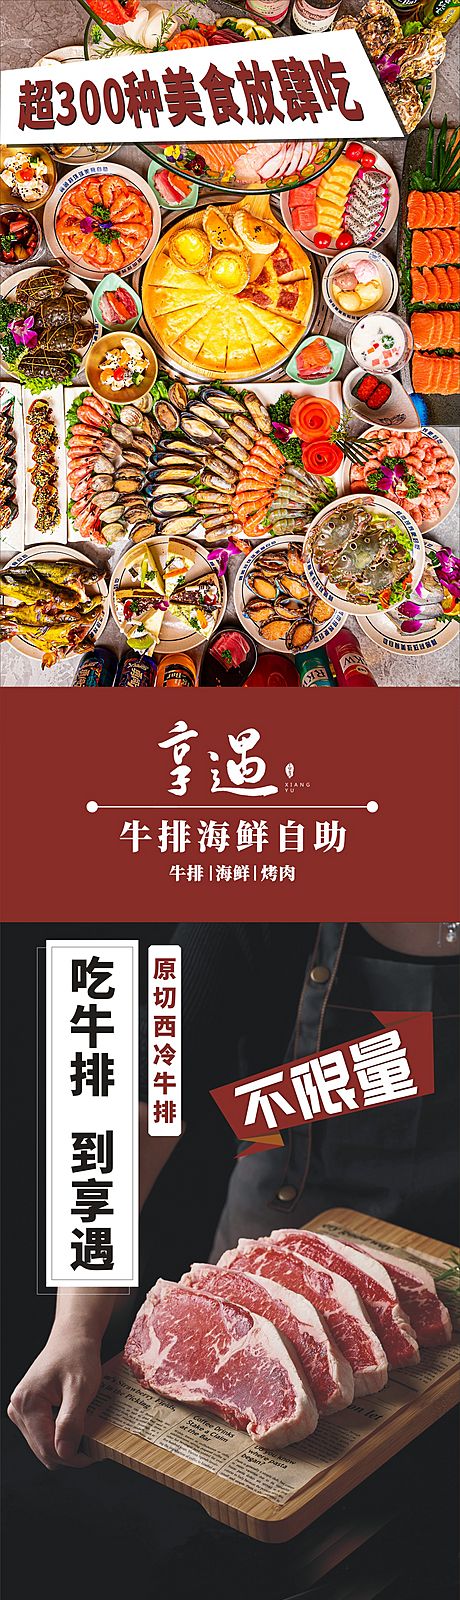 仙图网-美食自助餐海报